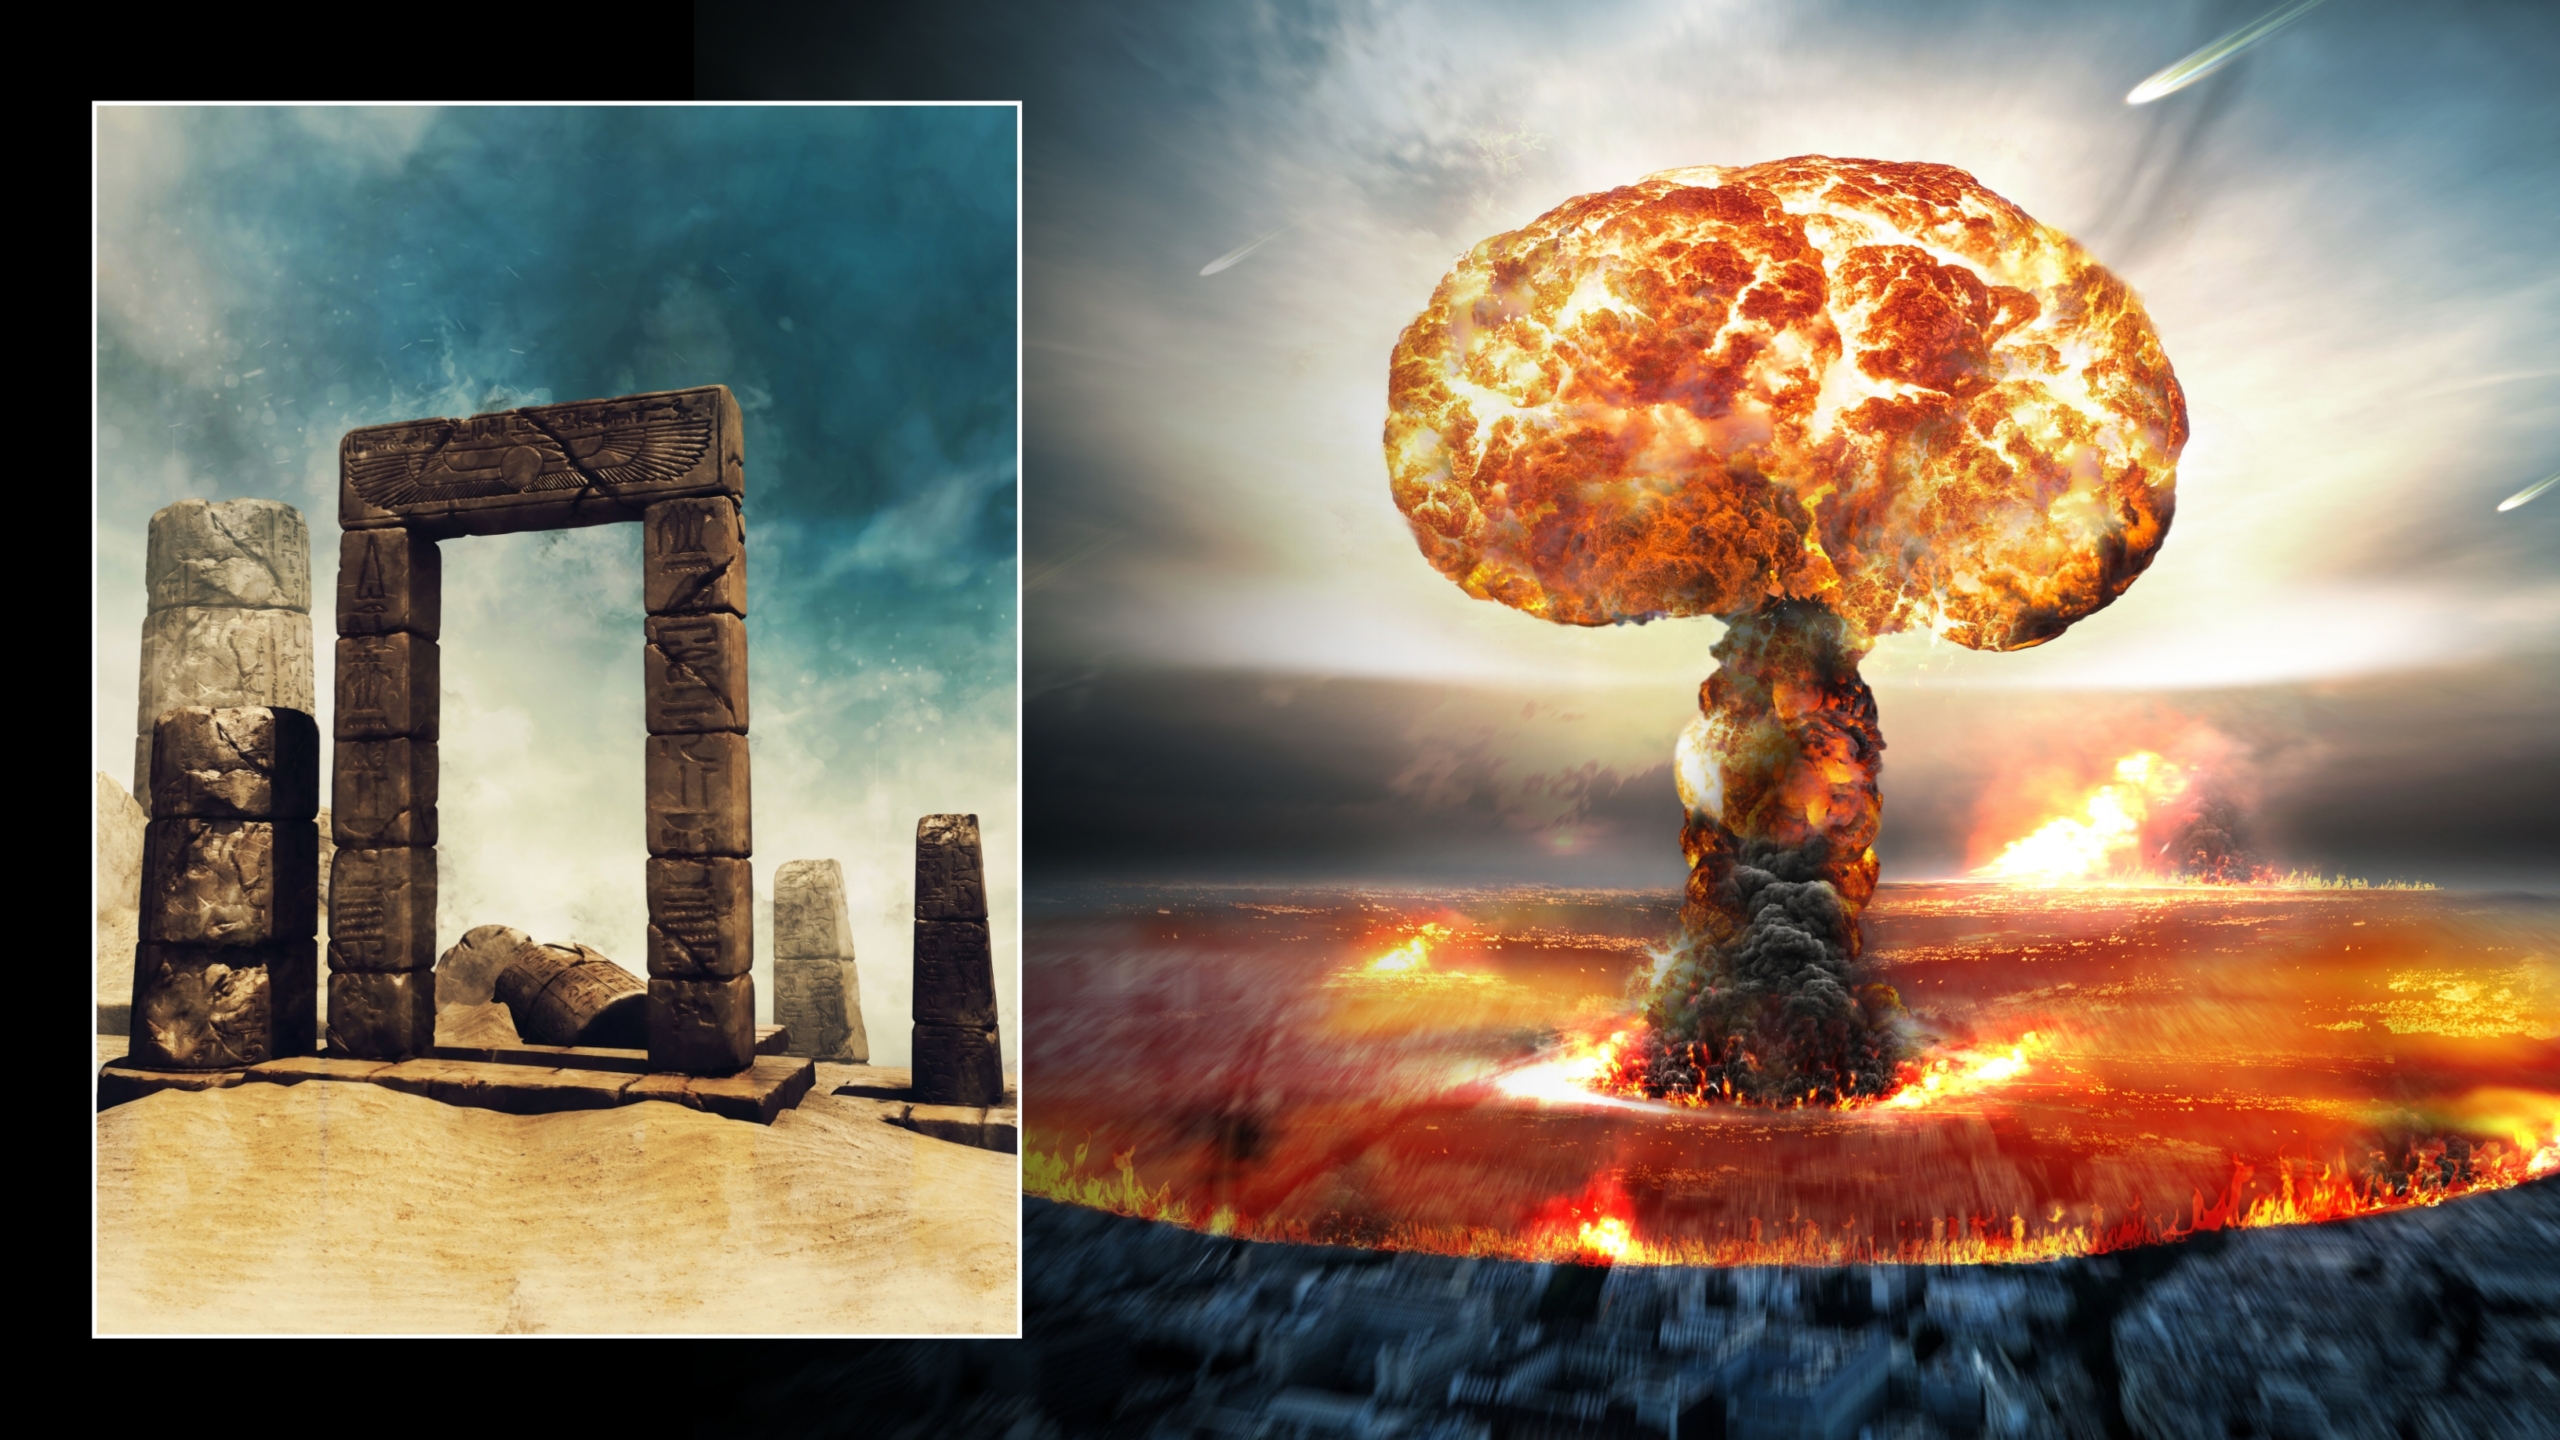 Ilustrații ale exploziei atomice și ruinelor antice în deșert. © Credite imagine: Obsidianfantacy & Razvan lonut Dragomirescu | Licențiat de la DreamsTime.com (fotografii stoc pentru utilizare editorială/comercială)